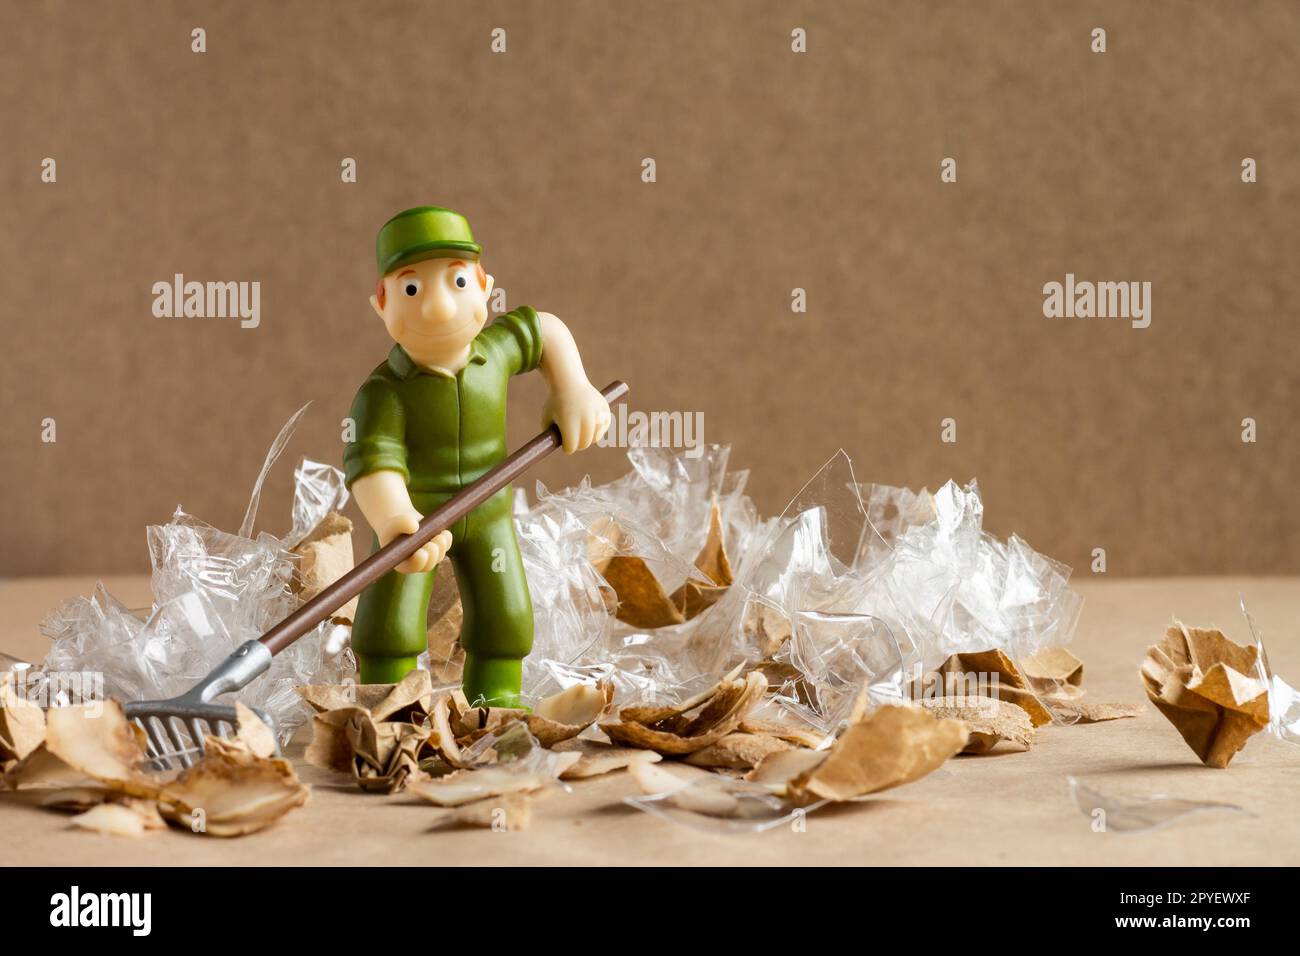 Ein Spielzeugmann im Arbeiteranzug macht eine große Menge Müll. Umweltschutz und Ökologiekonzept. Stockfoto